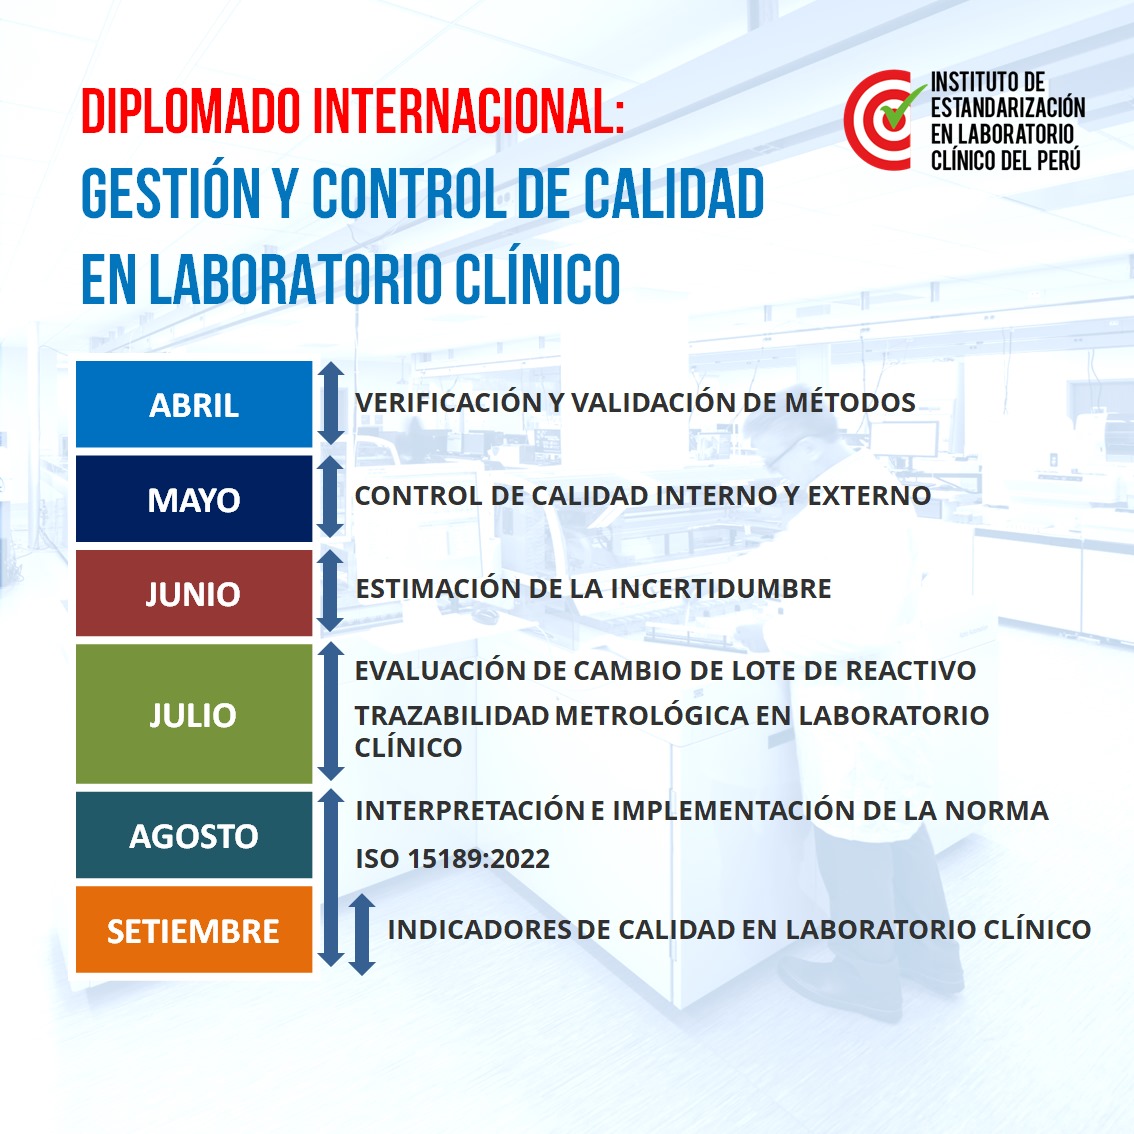 DIPLOMADO INTERNACIONAL: GESTIÓN Y CONTROL DE CALIDAD EN LABORATORIO CLÍNICO